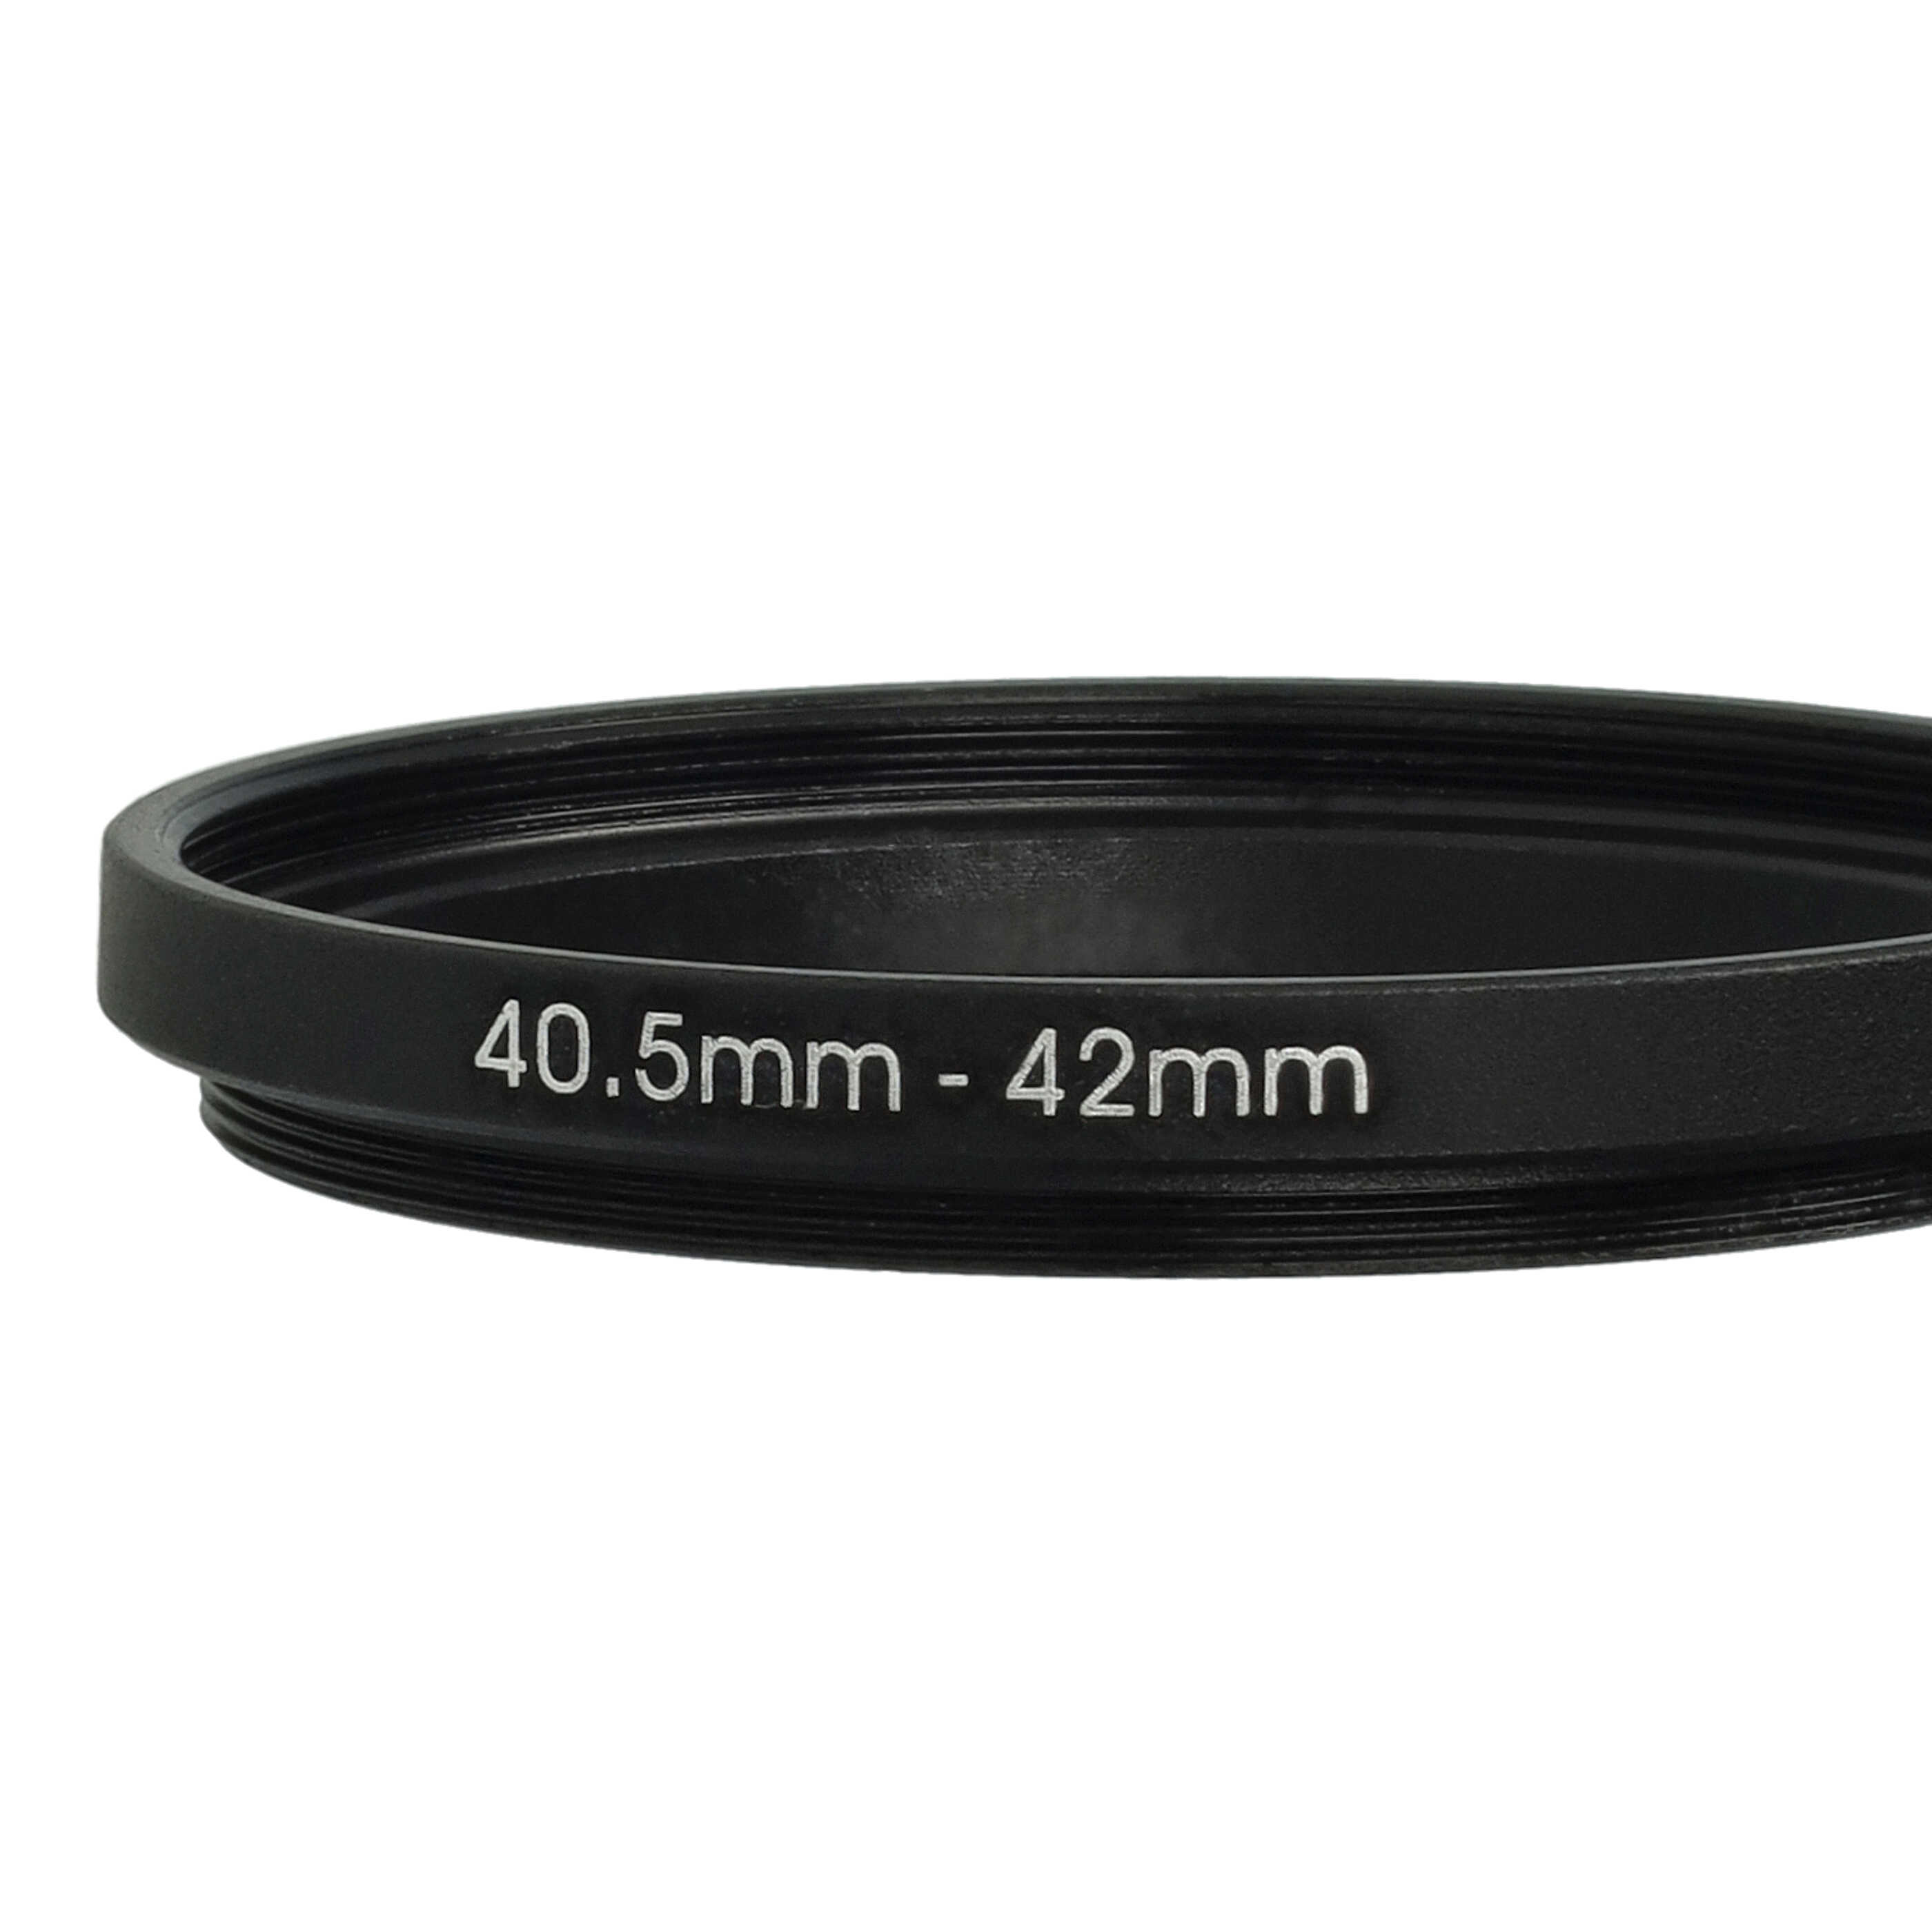 Bague Step-up 40,5 mm vers 42 mm pour divers objectifs d'appareil photo - Adaptateur filtre